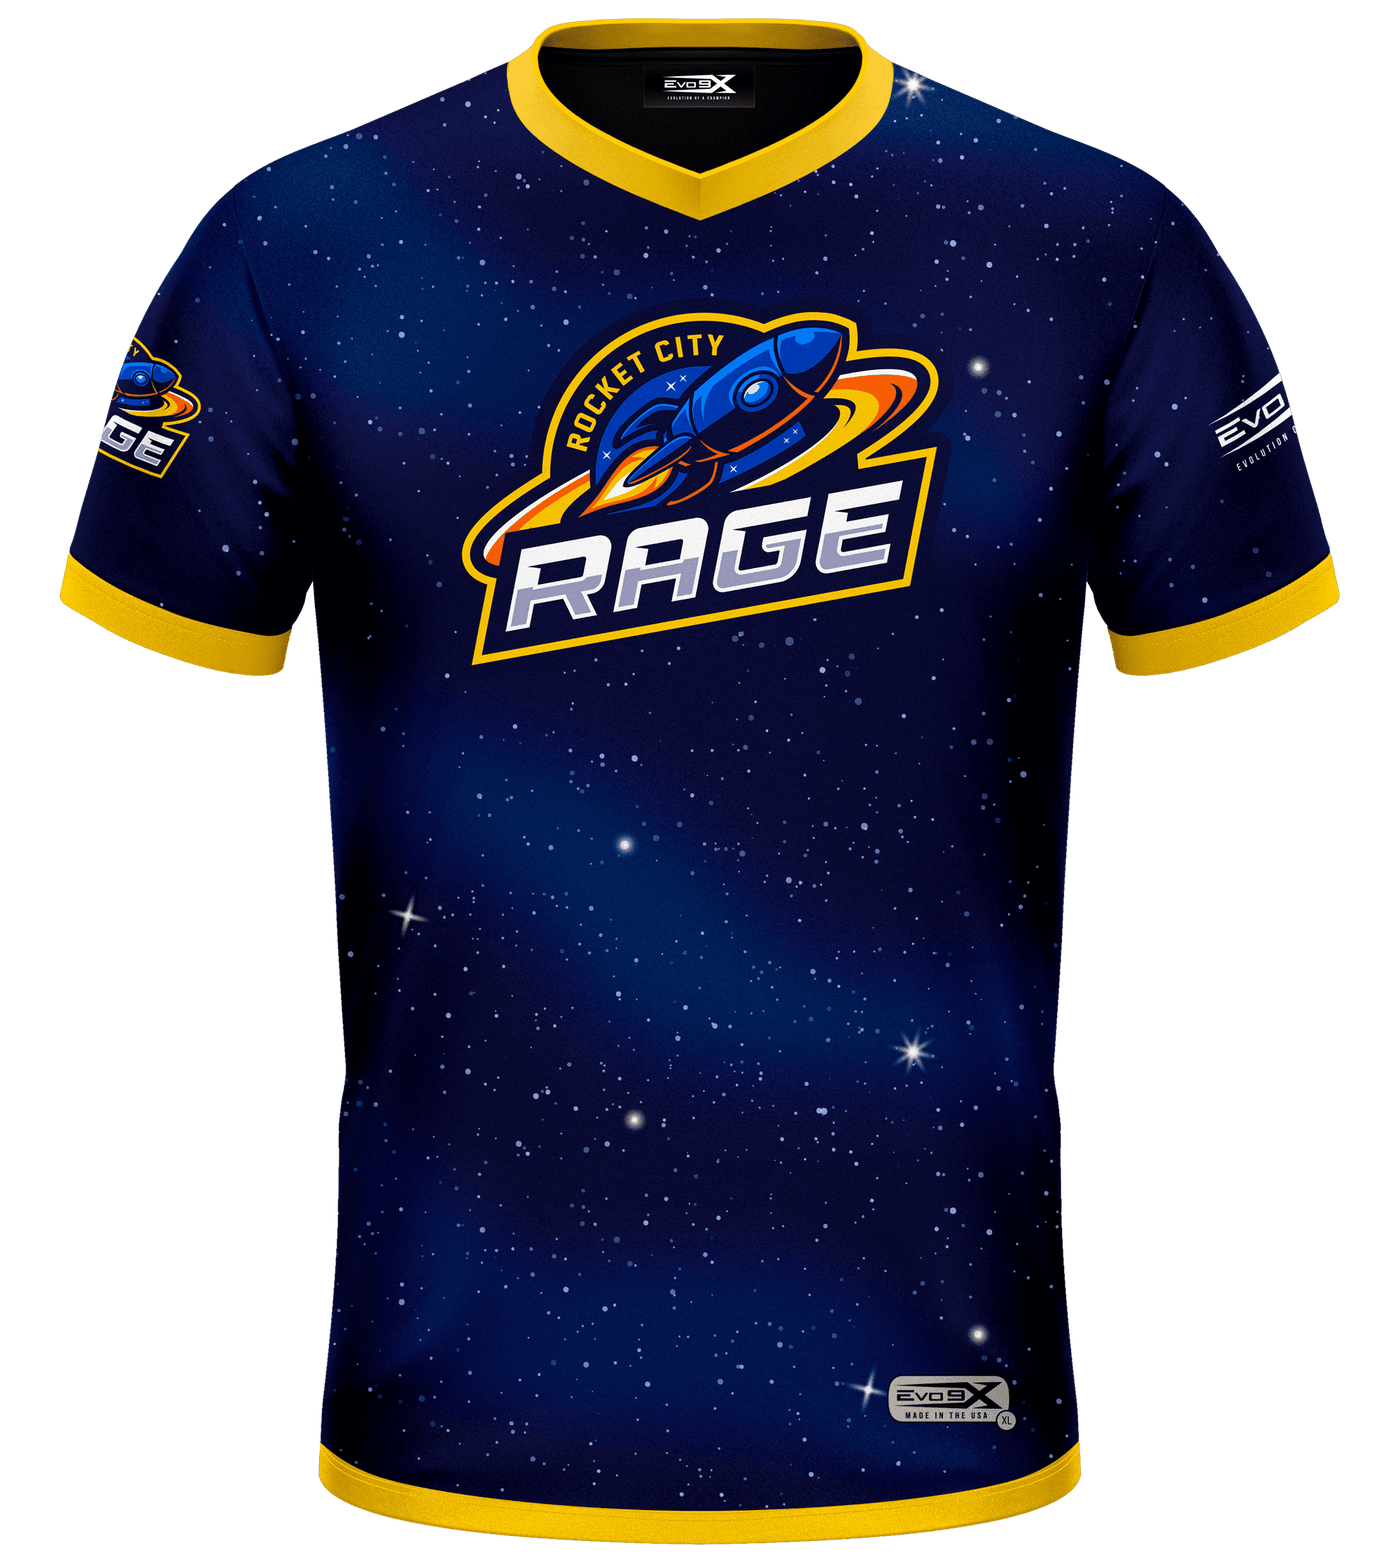 Rocket City Rage Baseball Jersey